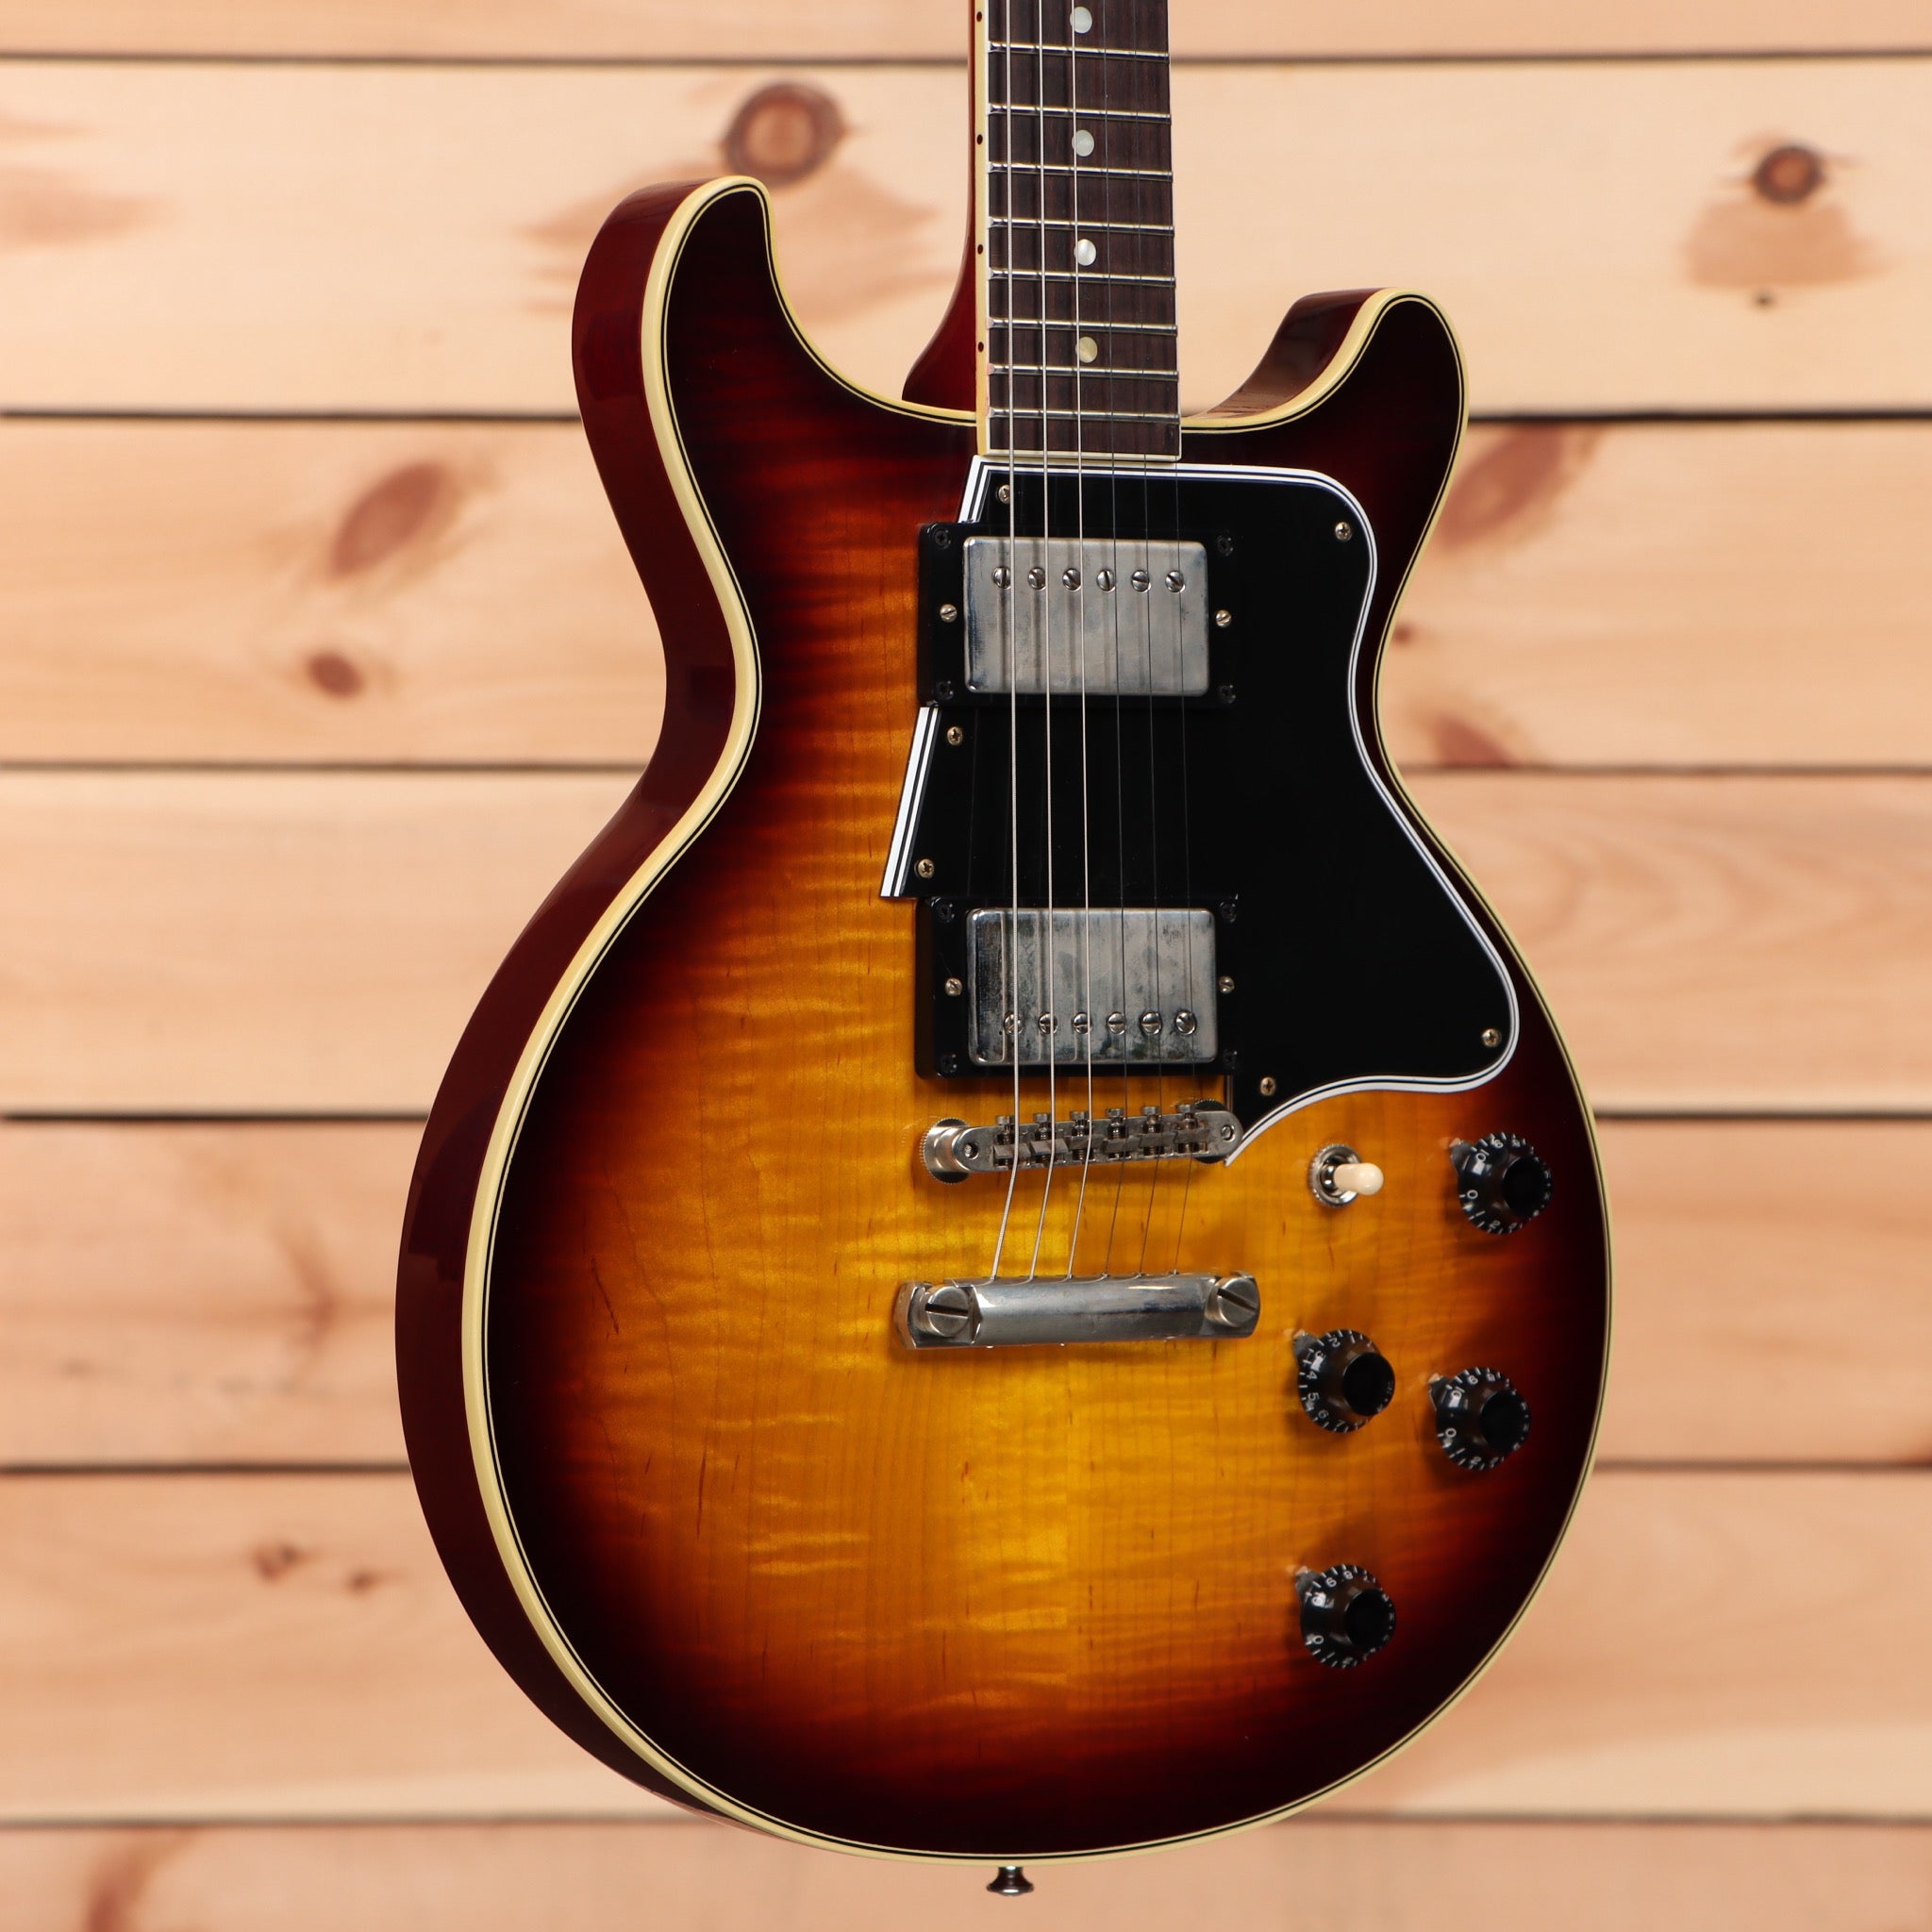 Gibson Les Paul Special Double Cut Figured Maple Top - Bourbon Burst